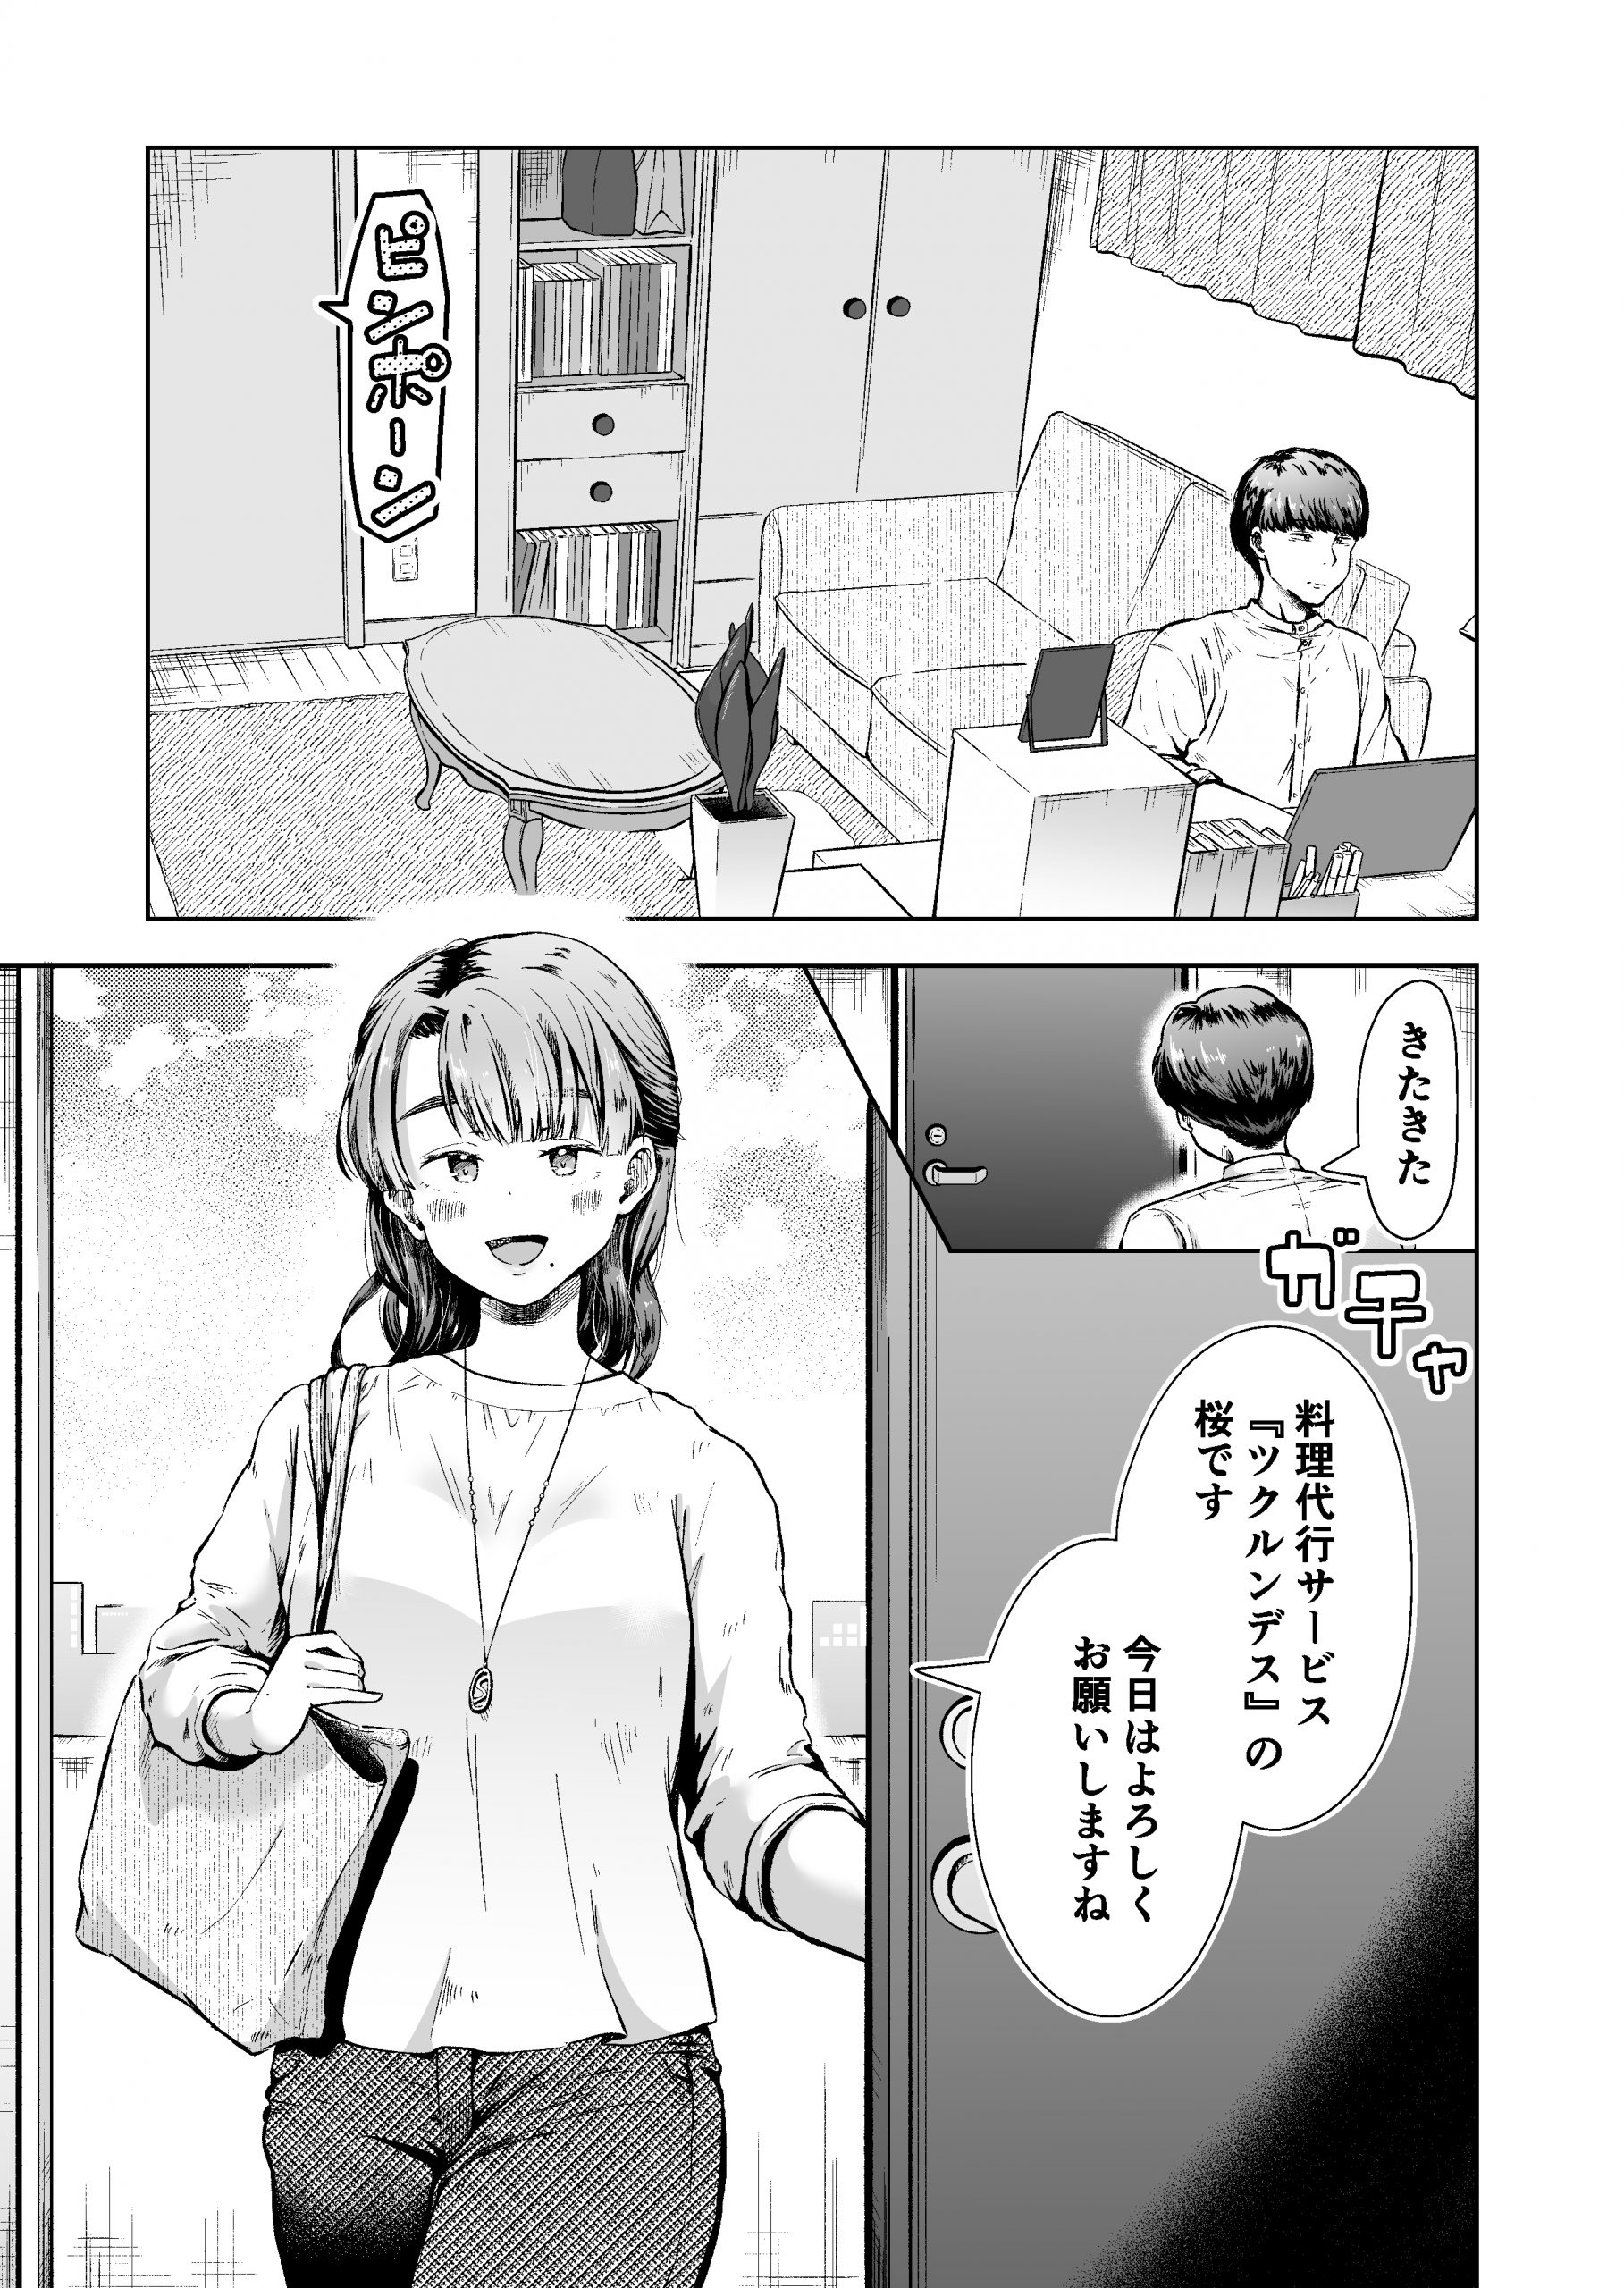 料理代行サービスで働く桜さん-1-scaled 【エロ漫画人妻】料理代行サービスの人妻さんがエッチなサービスもしてくれるようで…